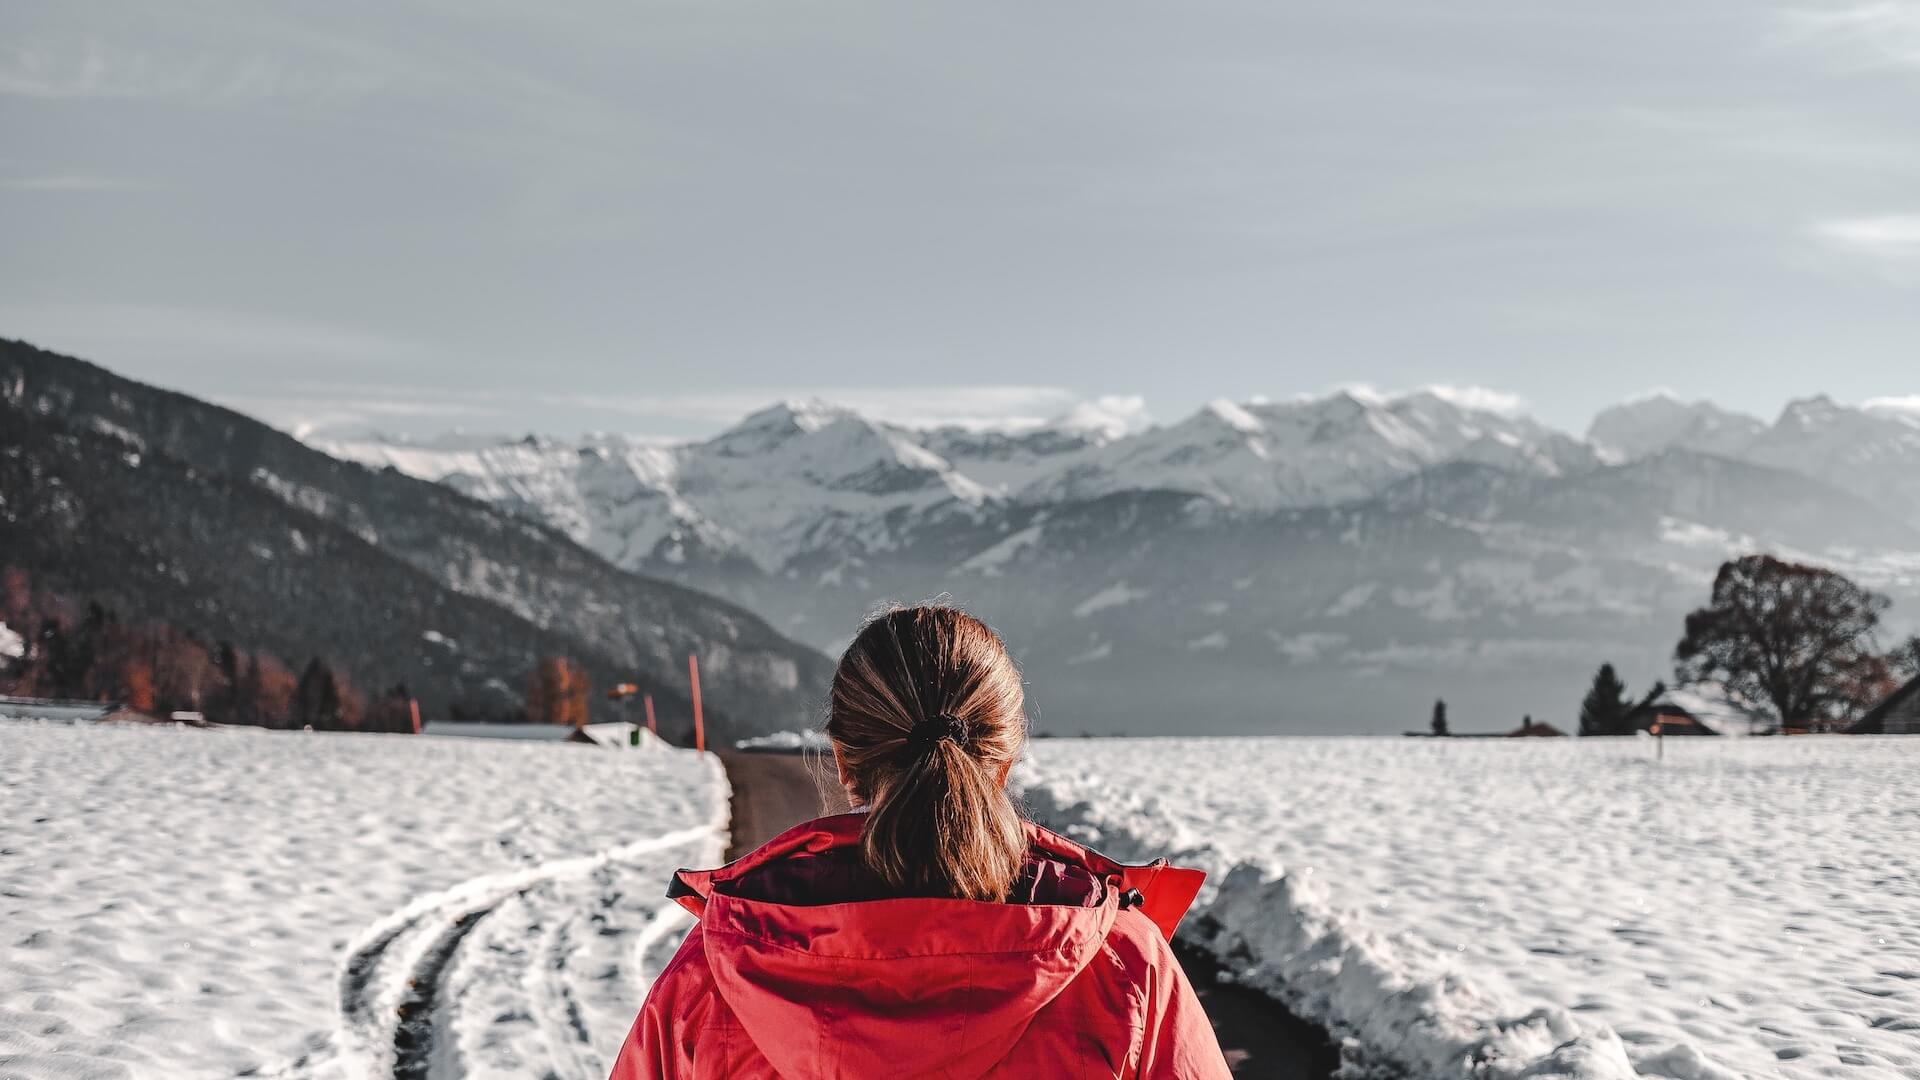 Winter Camps for active adventures in Swiss boarding schools